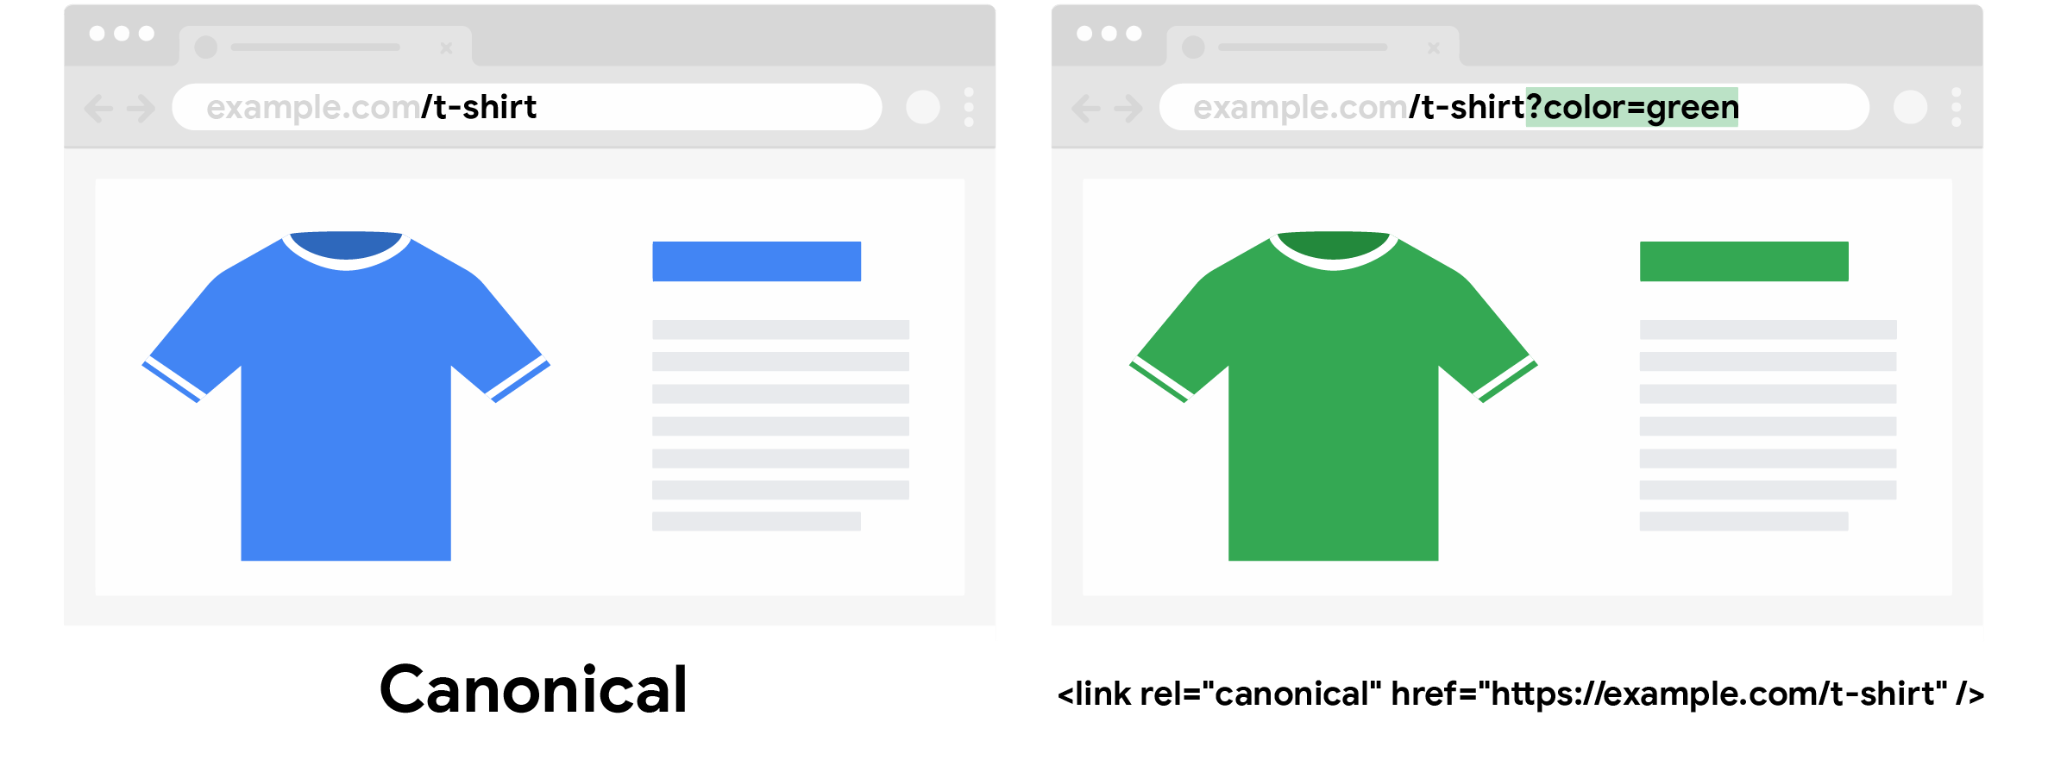 Una t-shirt blu canonica senza parametro di ricerca color e una t-shirt verde non canonica con parametro di ricerca color specificato